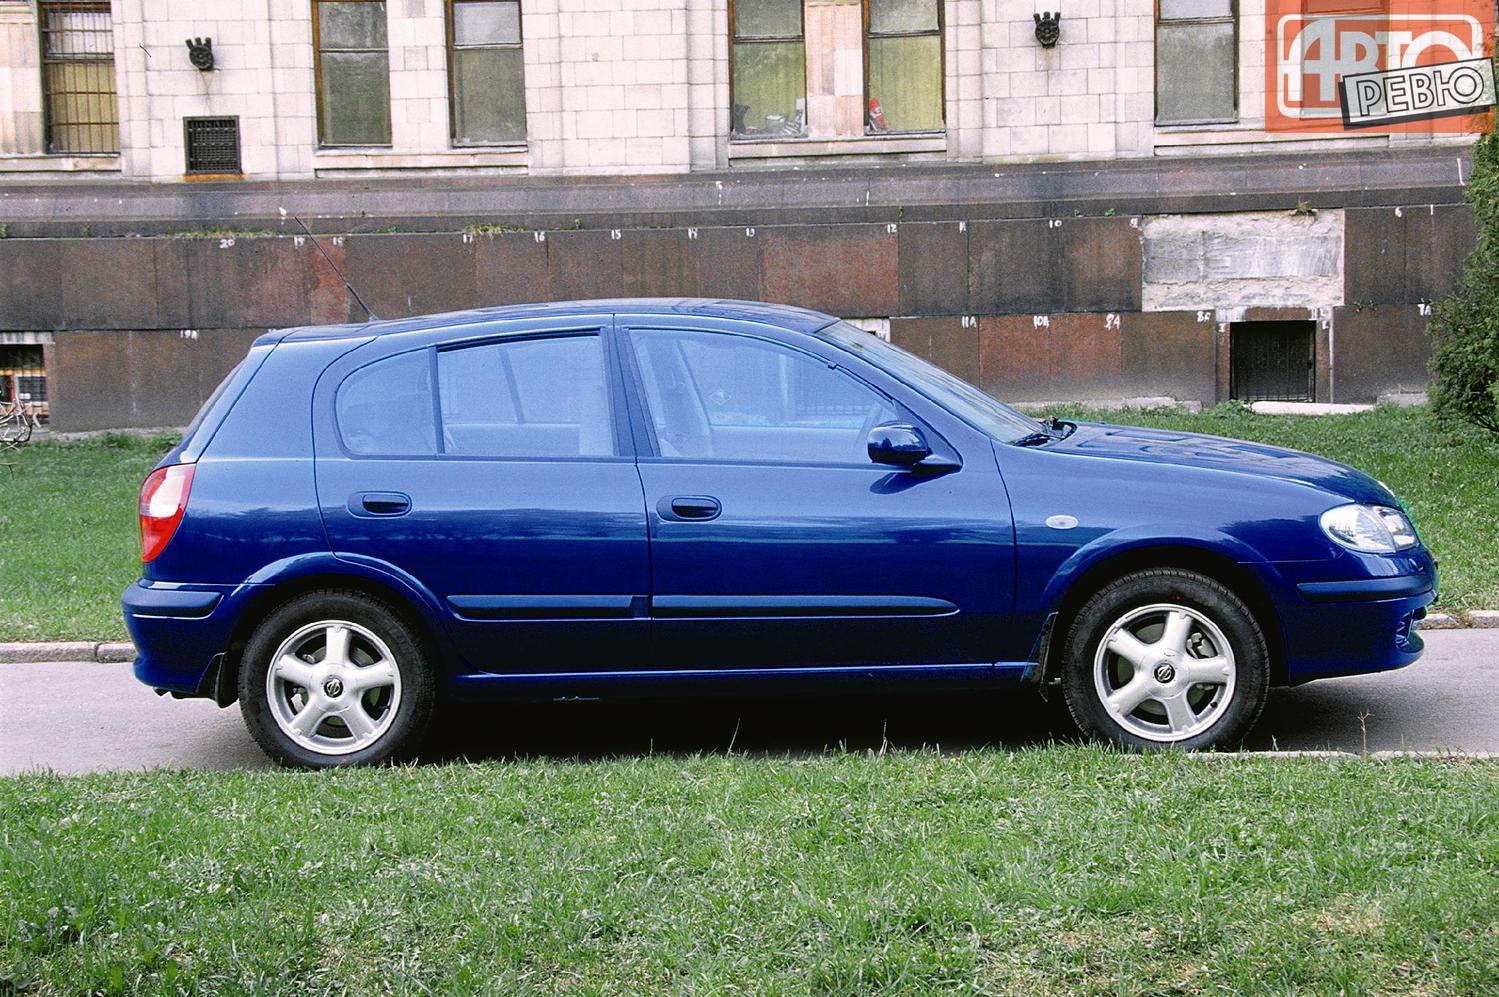 хэтчбек 5 дв. Nissan Almera 2000 - 2003г выпуска модификация 1.8 MT (114 л.с.)